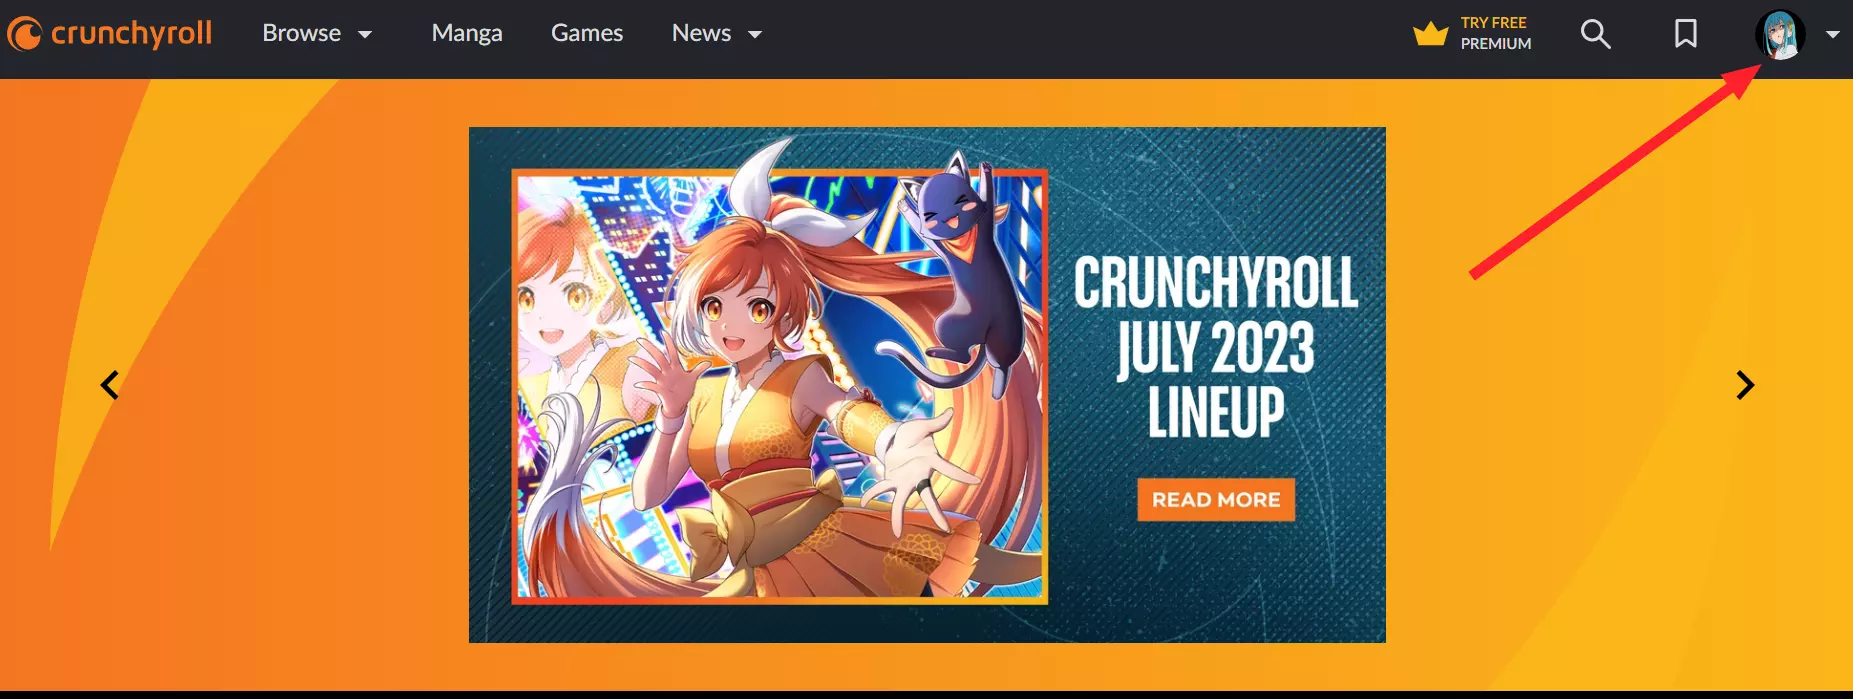 "Profile Icon" in Crunchyroll